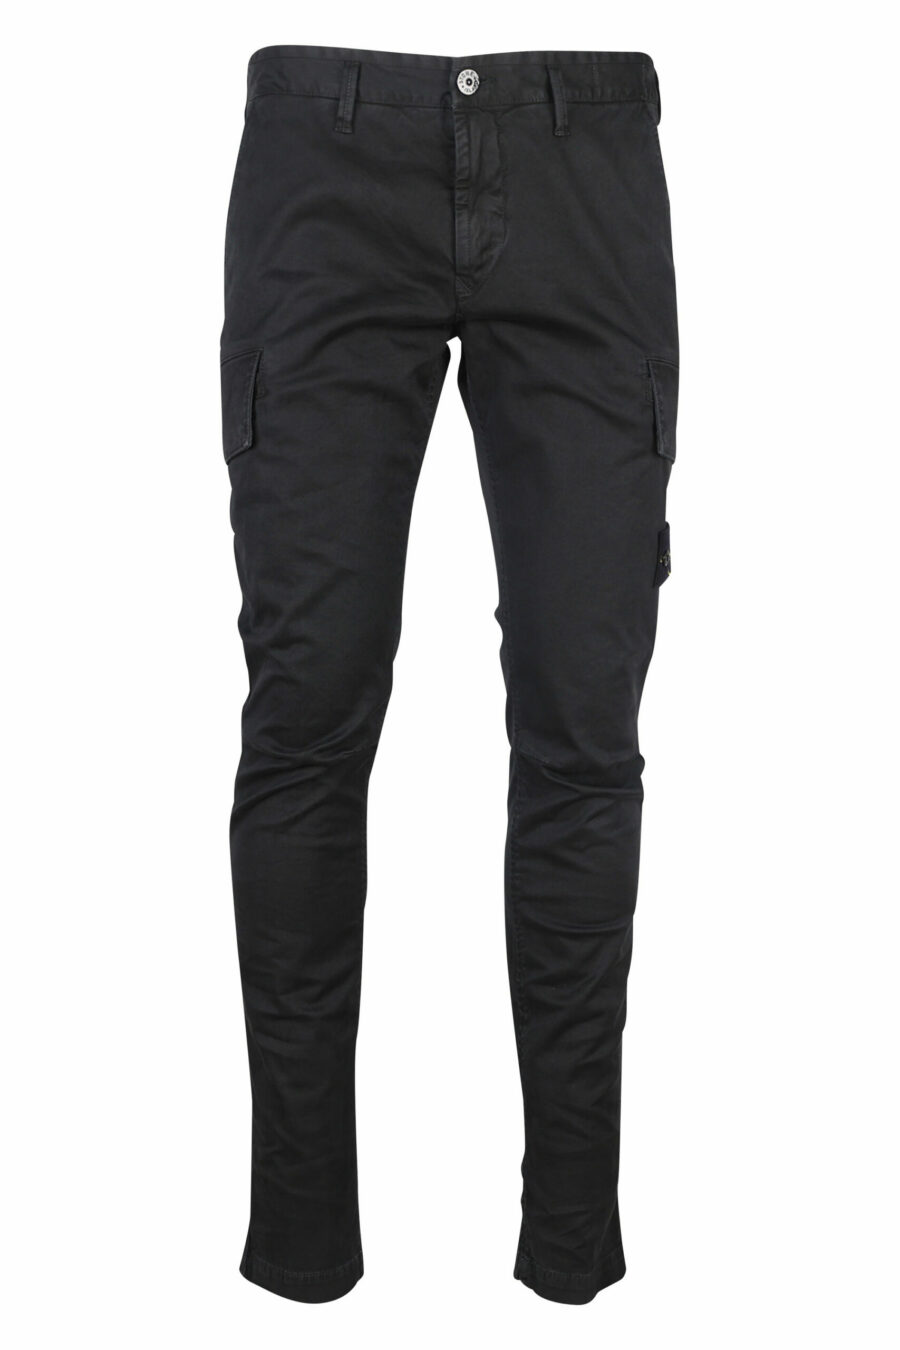 Pantalon skinny noir avec patch logo sur le côté - 8052572762253 scaled